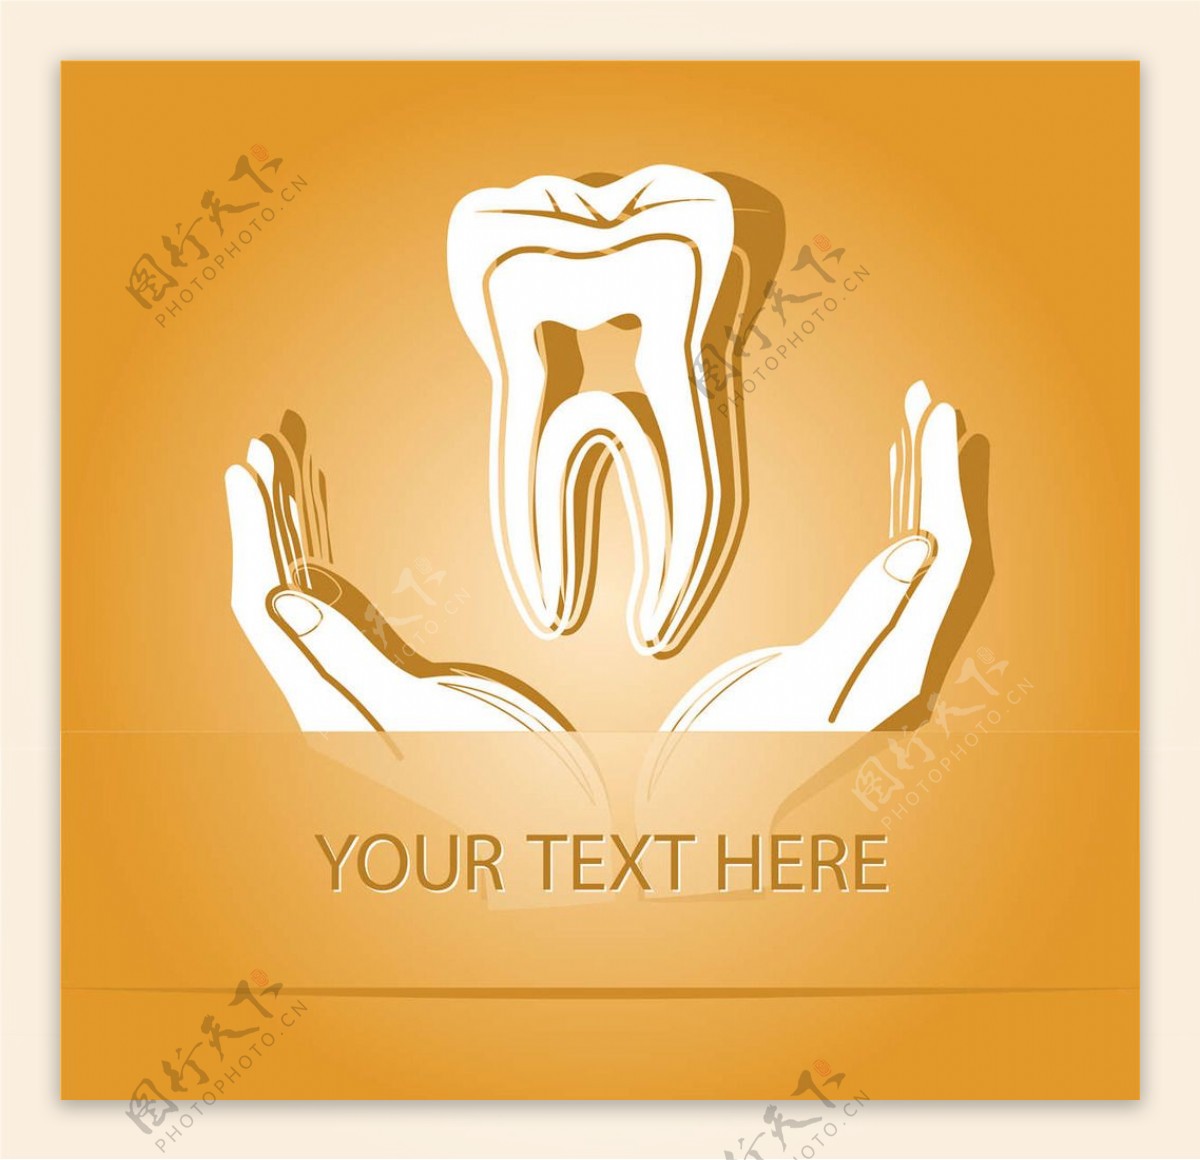 牙医牙齿图标图片